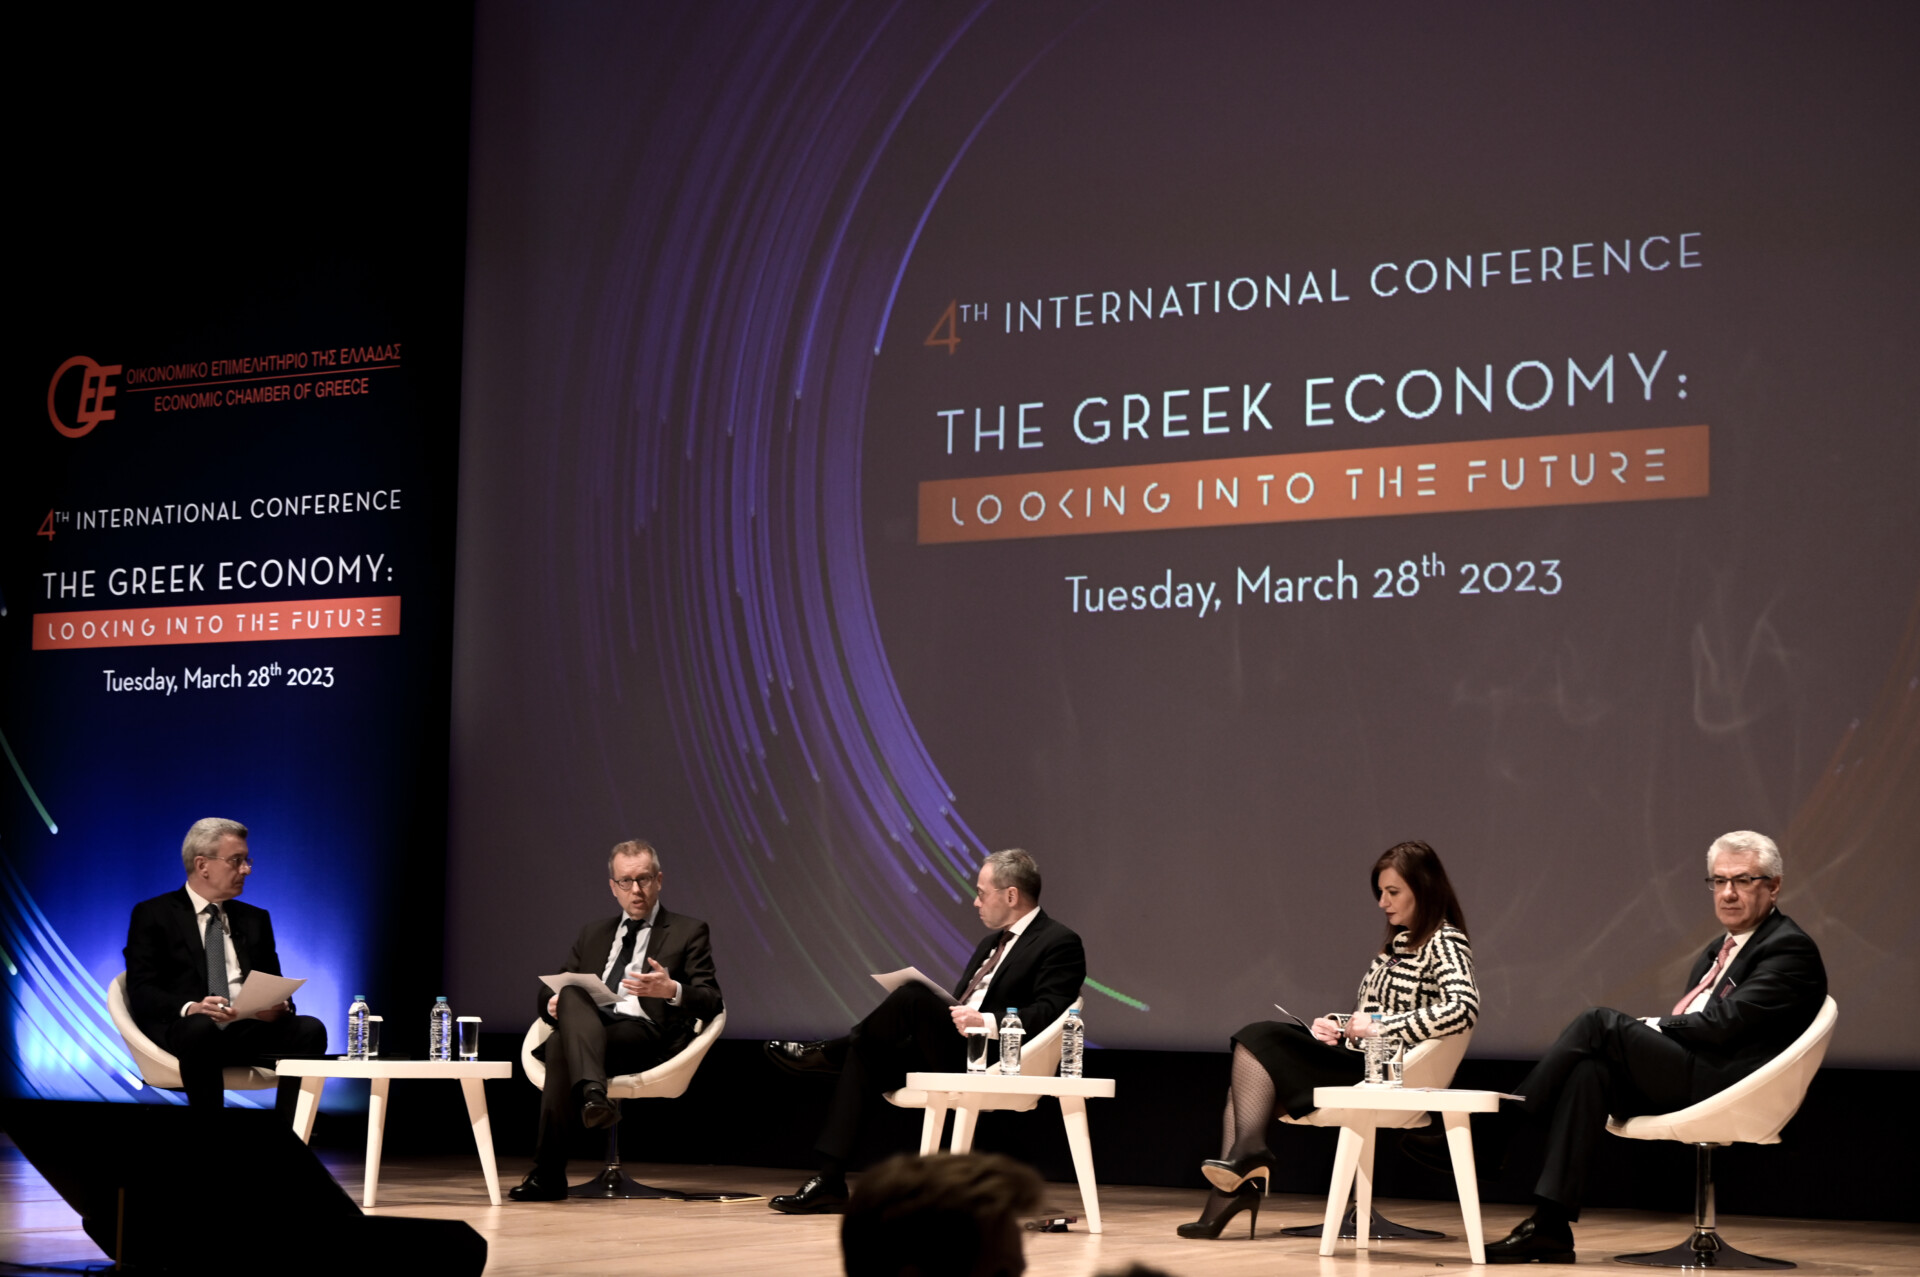 Στιγμιότυπο από το 4ο Διεθνές Συνέδριο του Οικονομικού Επιμελητηρίου Ελλάδας (ΟΕΕ) © Eurokinissi